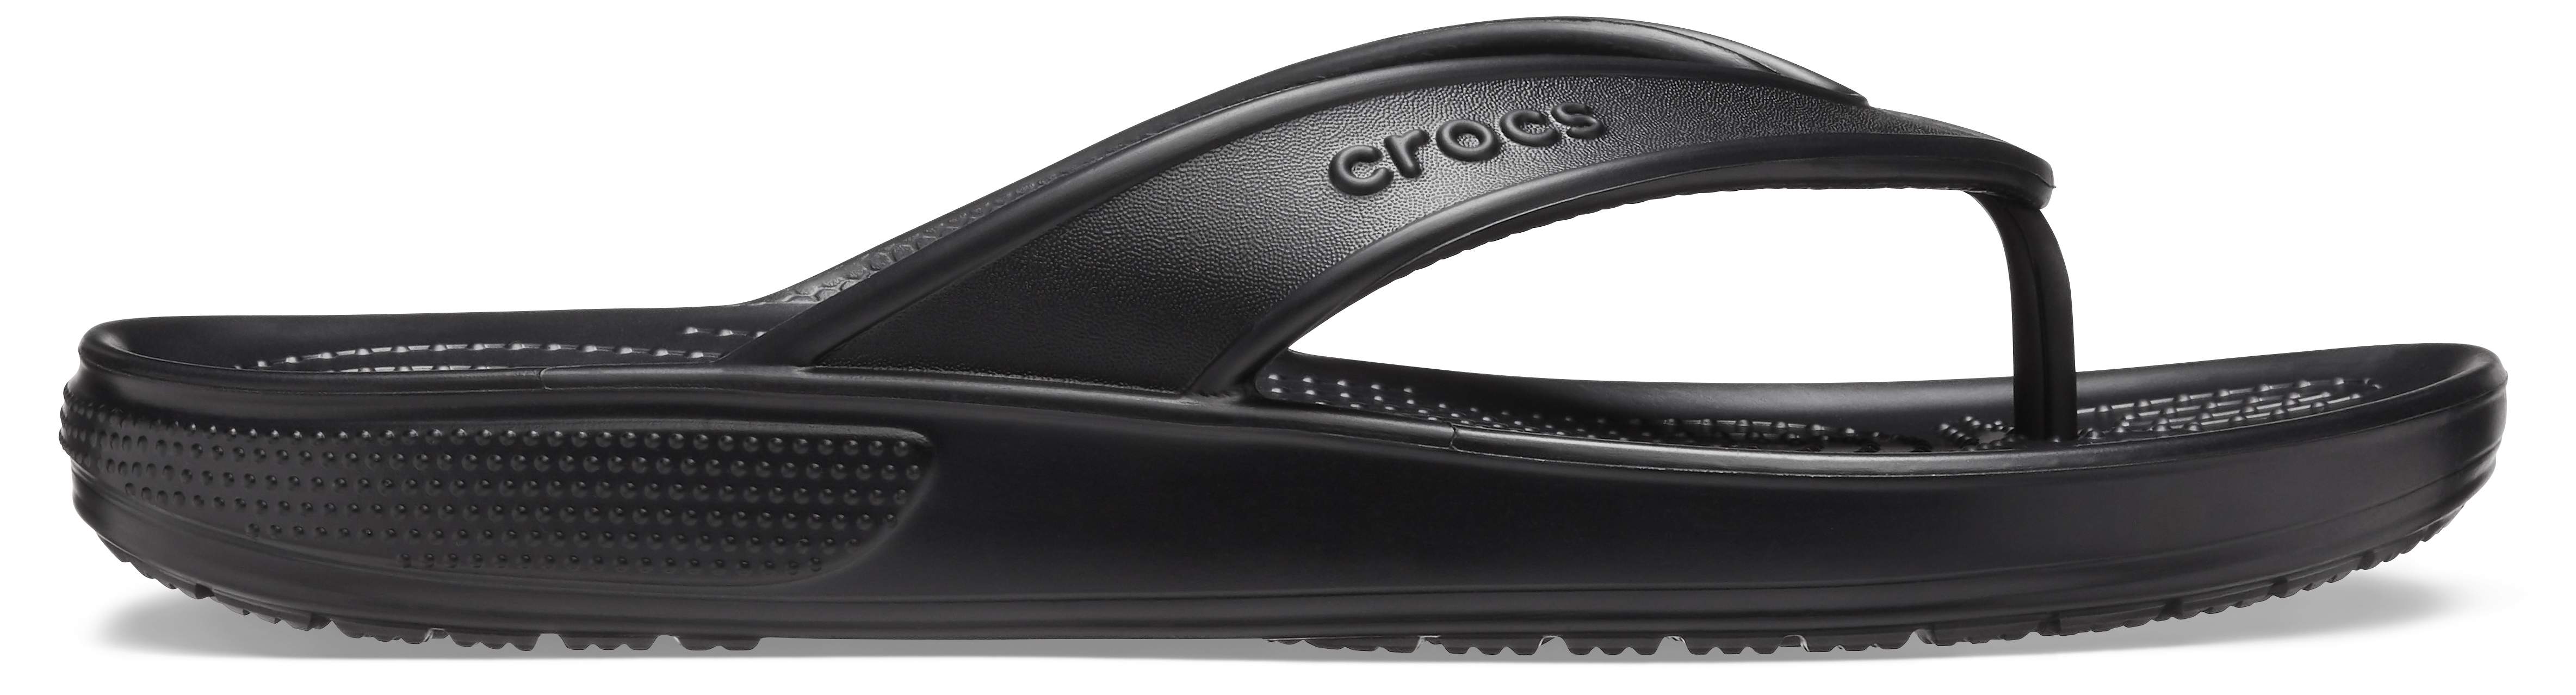 crocs classic 2 slide